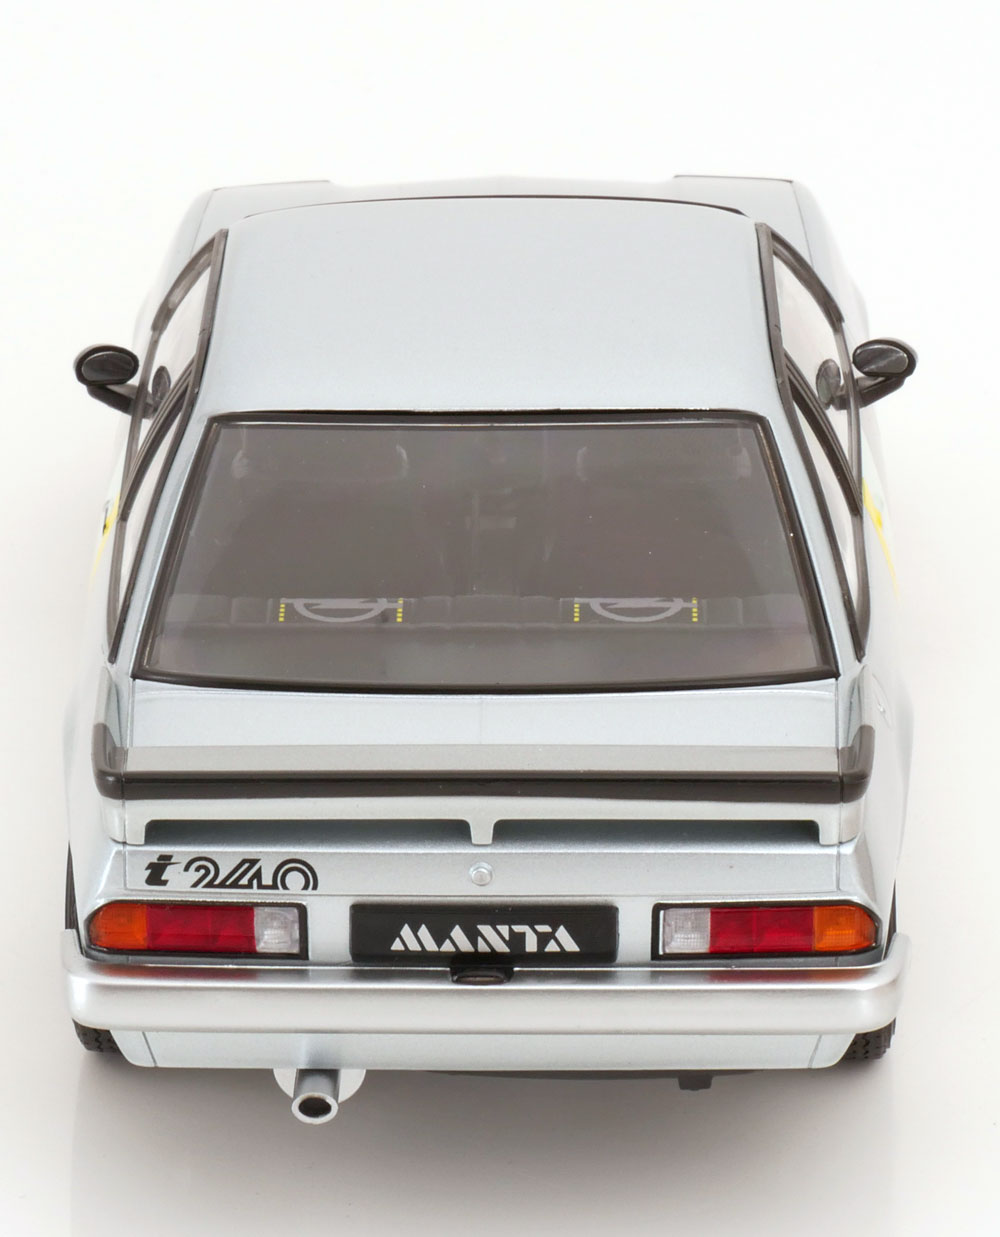 1:18 Norev Opel Manta i240 1985 silver